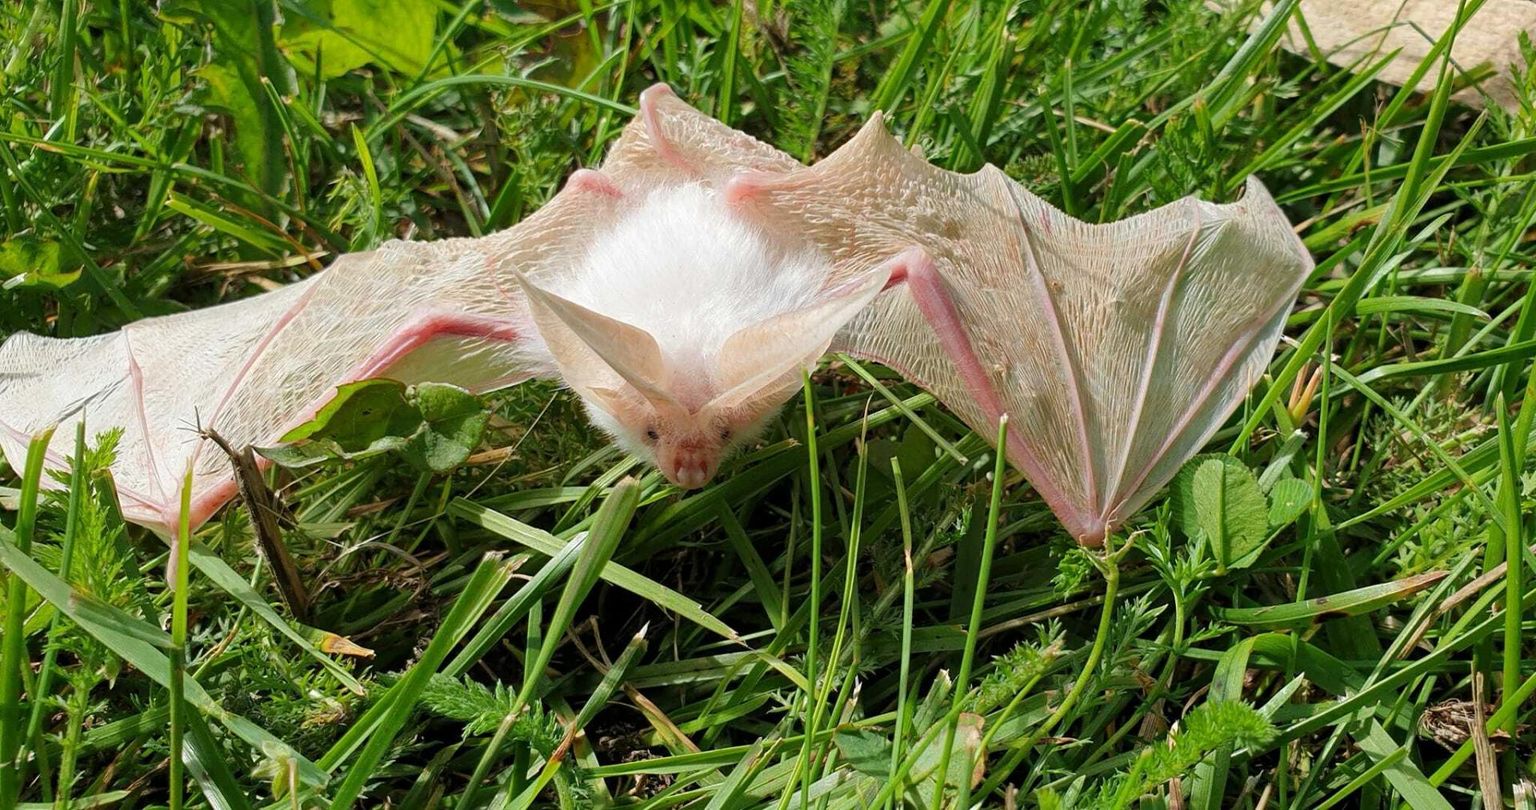 Бурый ушан (Plecotus auritus) с признаками альбинизма. Эксперт по летучим мышам Лаури Лутсар сказал, что никогда раньше не видел ничего подобного.